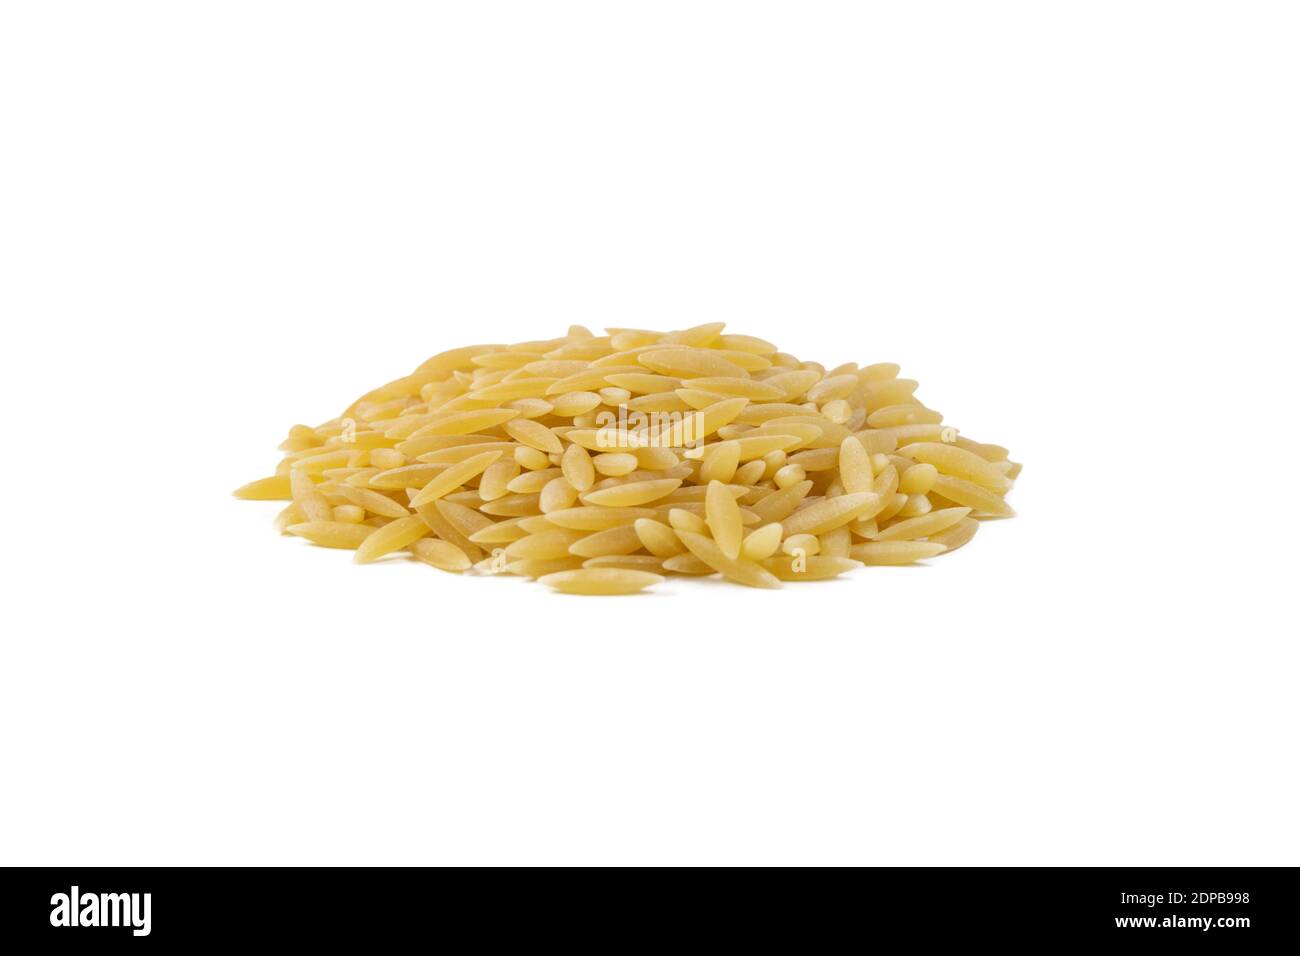 In Griechenland genannt kritharaki. In Italien genannt Orzo. Reis geformte Pasta Haufen isoliert auf weißem Hintergrund. Art der Pasta. Lebensmittelzutat. Stockfoto